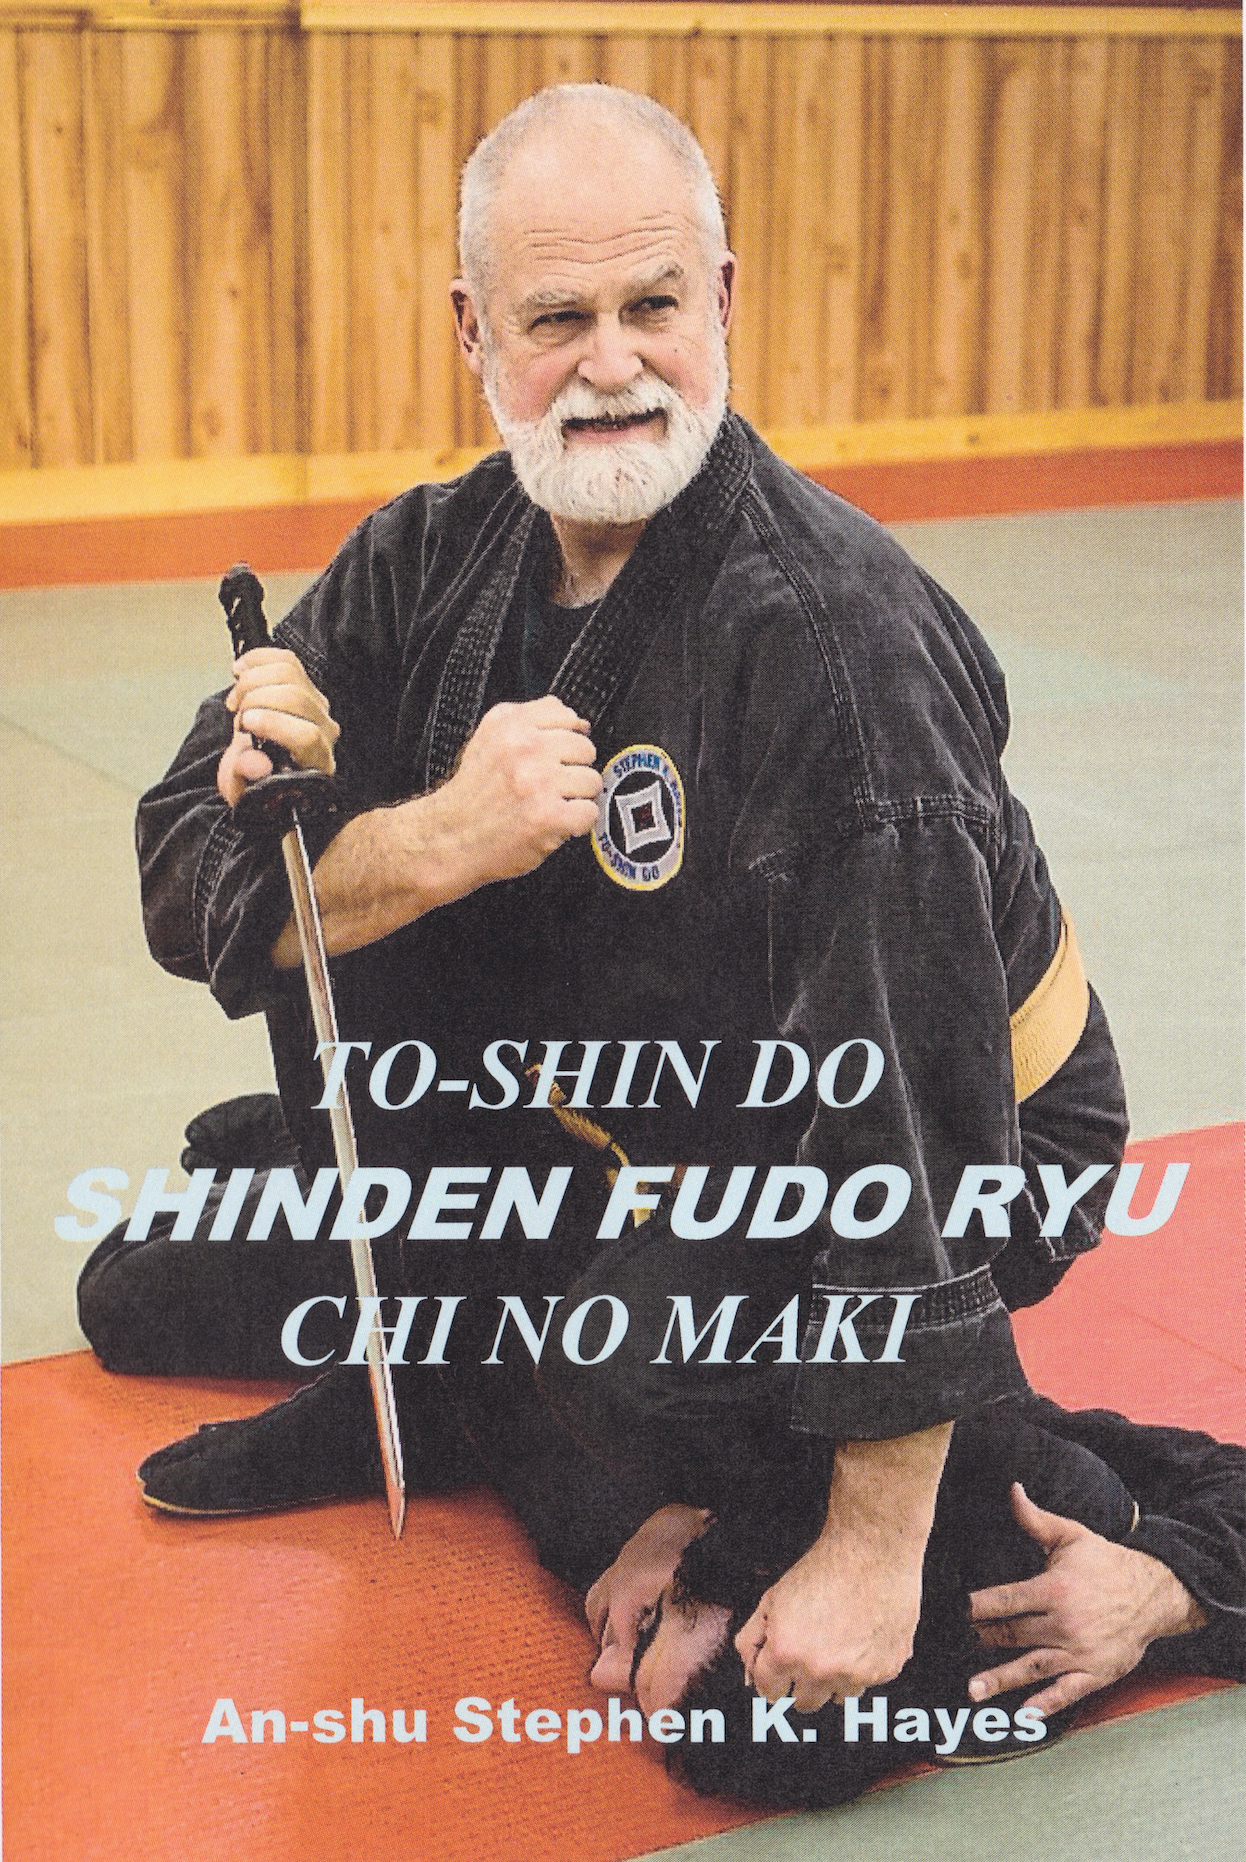 Combate avanzado sin armas - Shinden Fudo Ryu Chi no Maki 4 DVD Set con Stephen Hayes